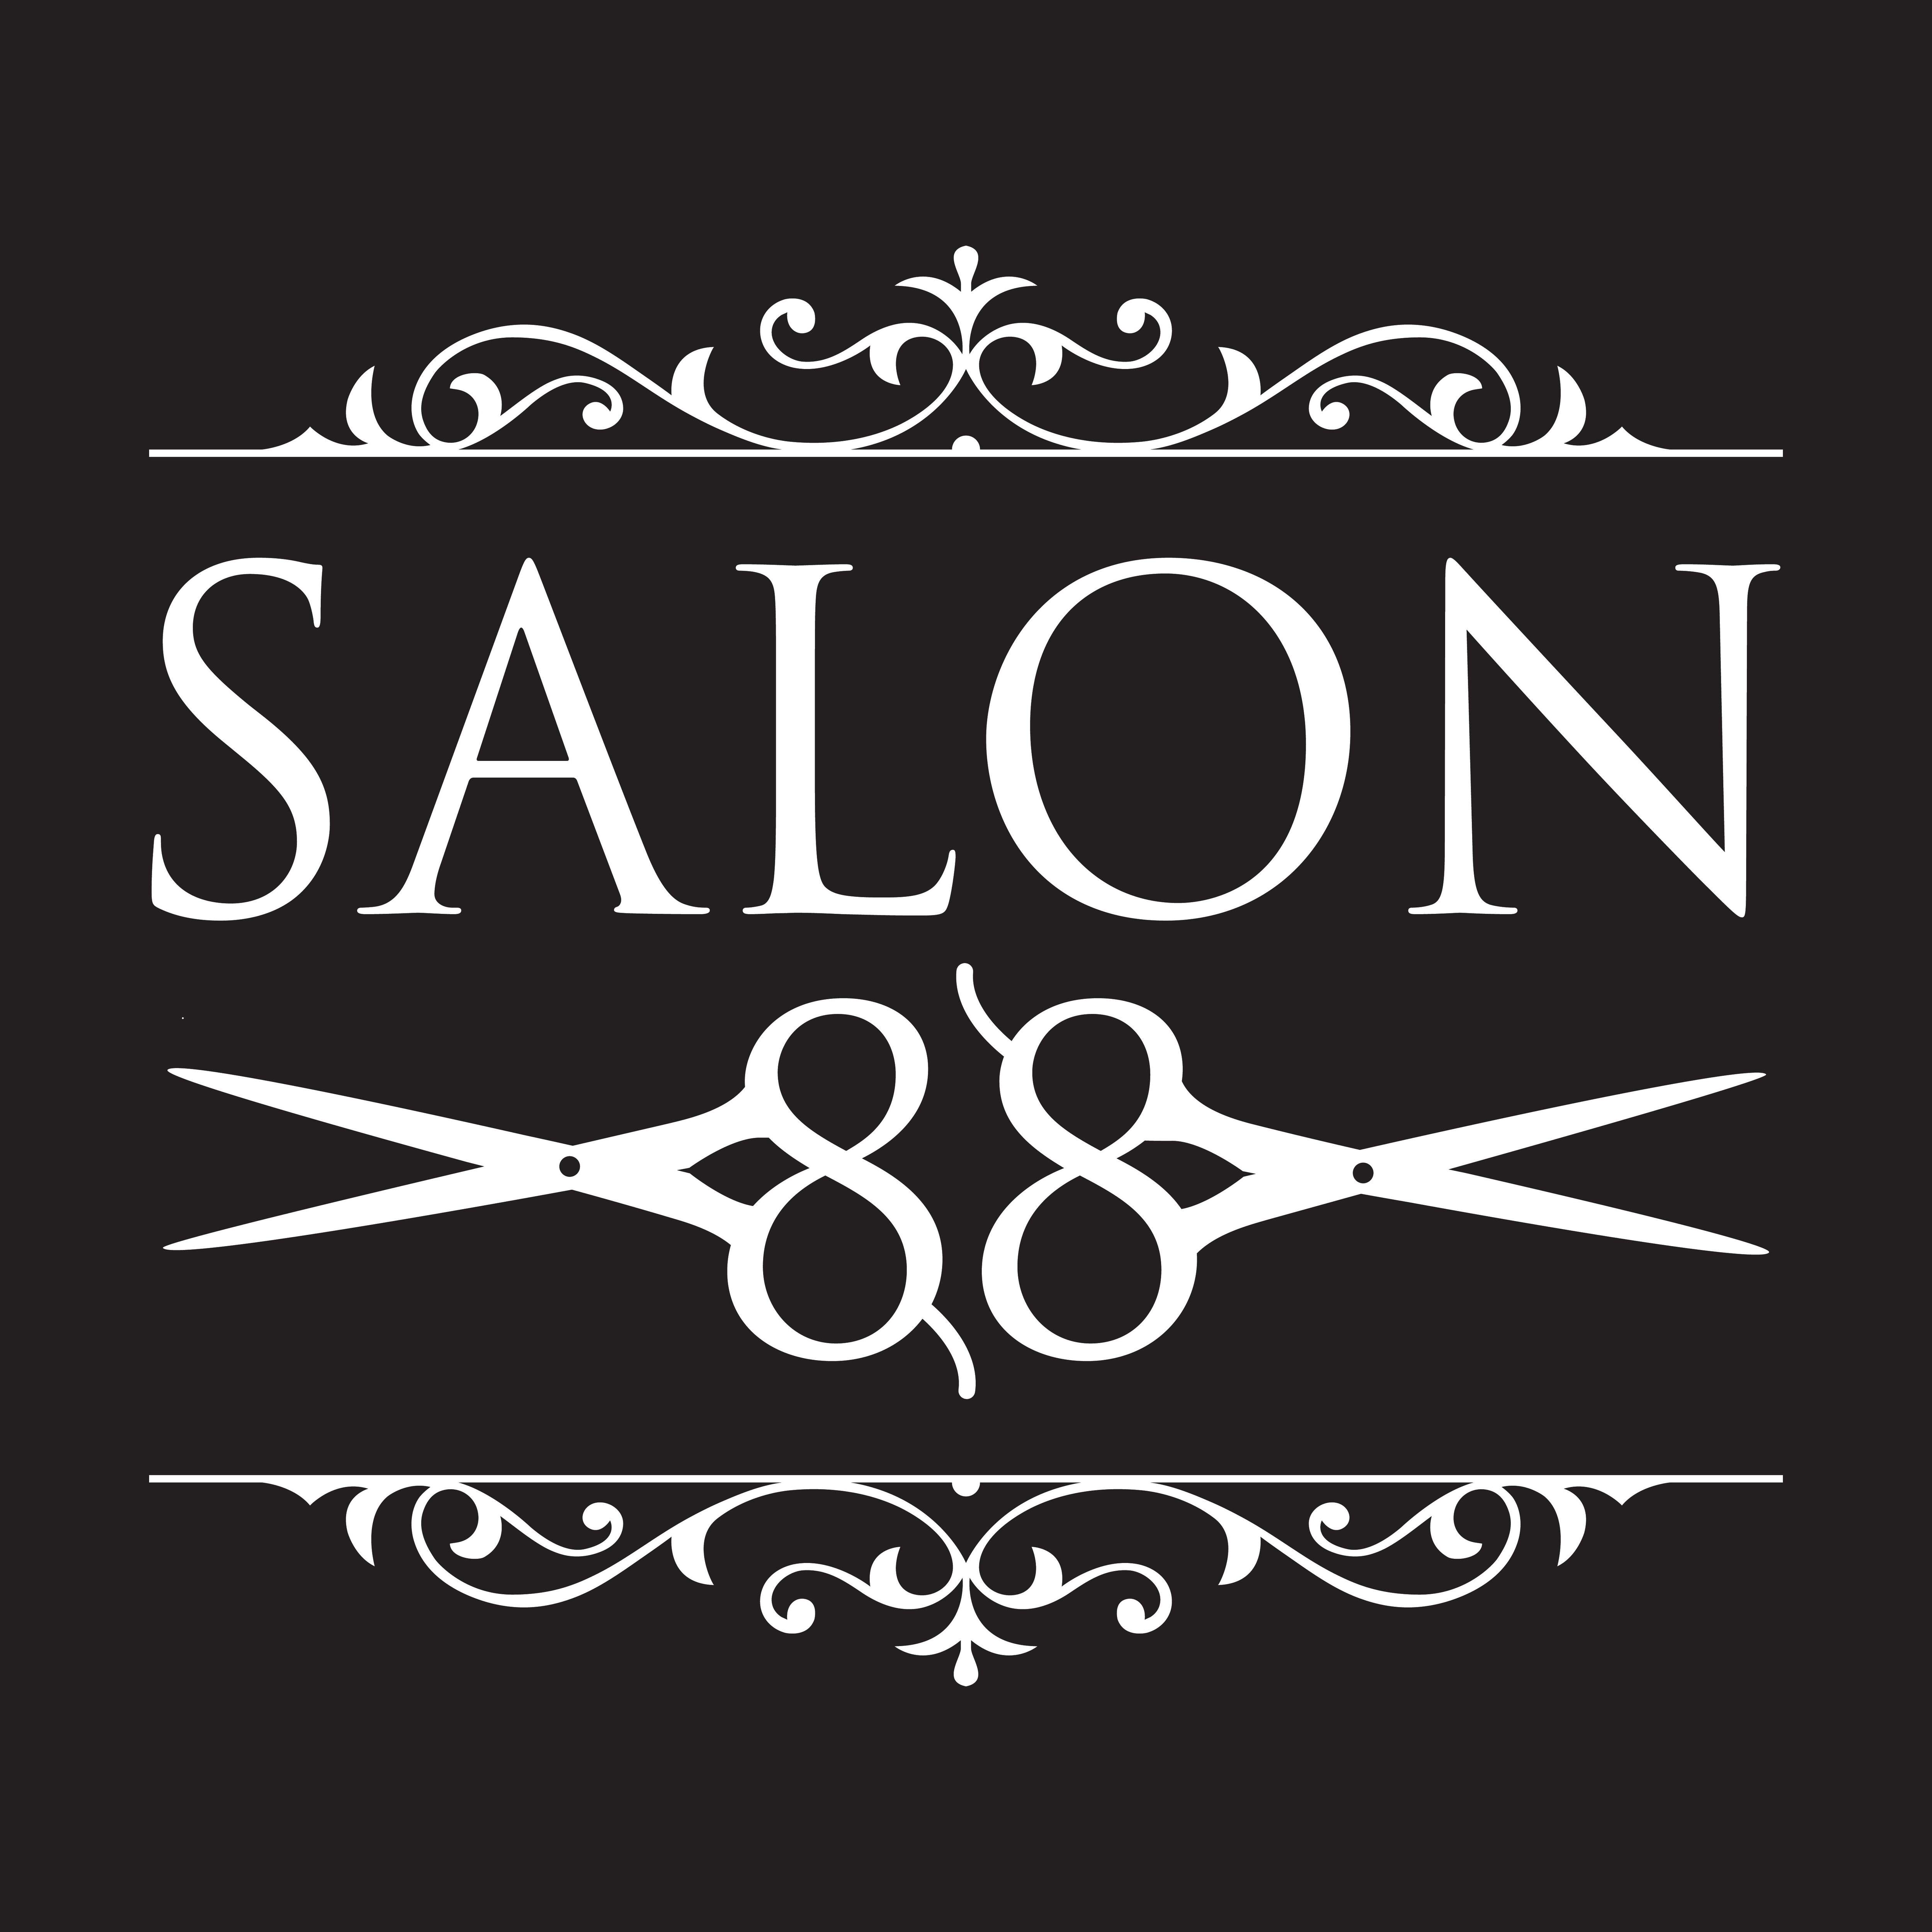 Salon 88 - Southampton